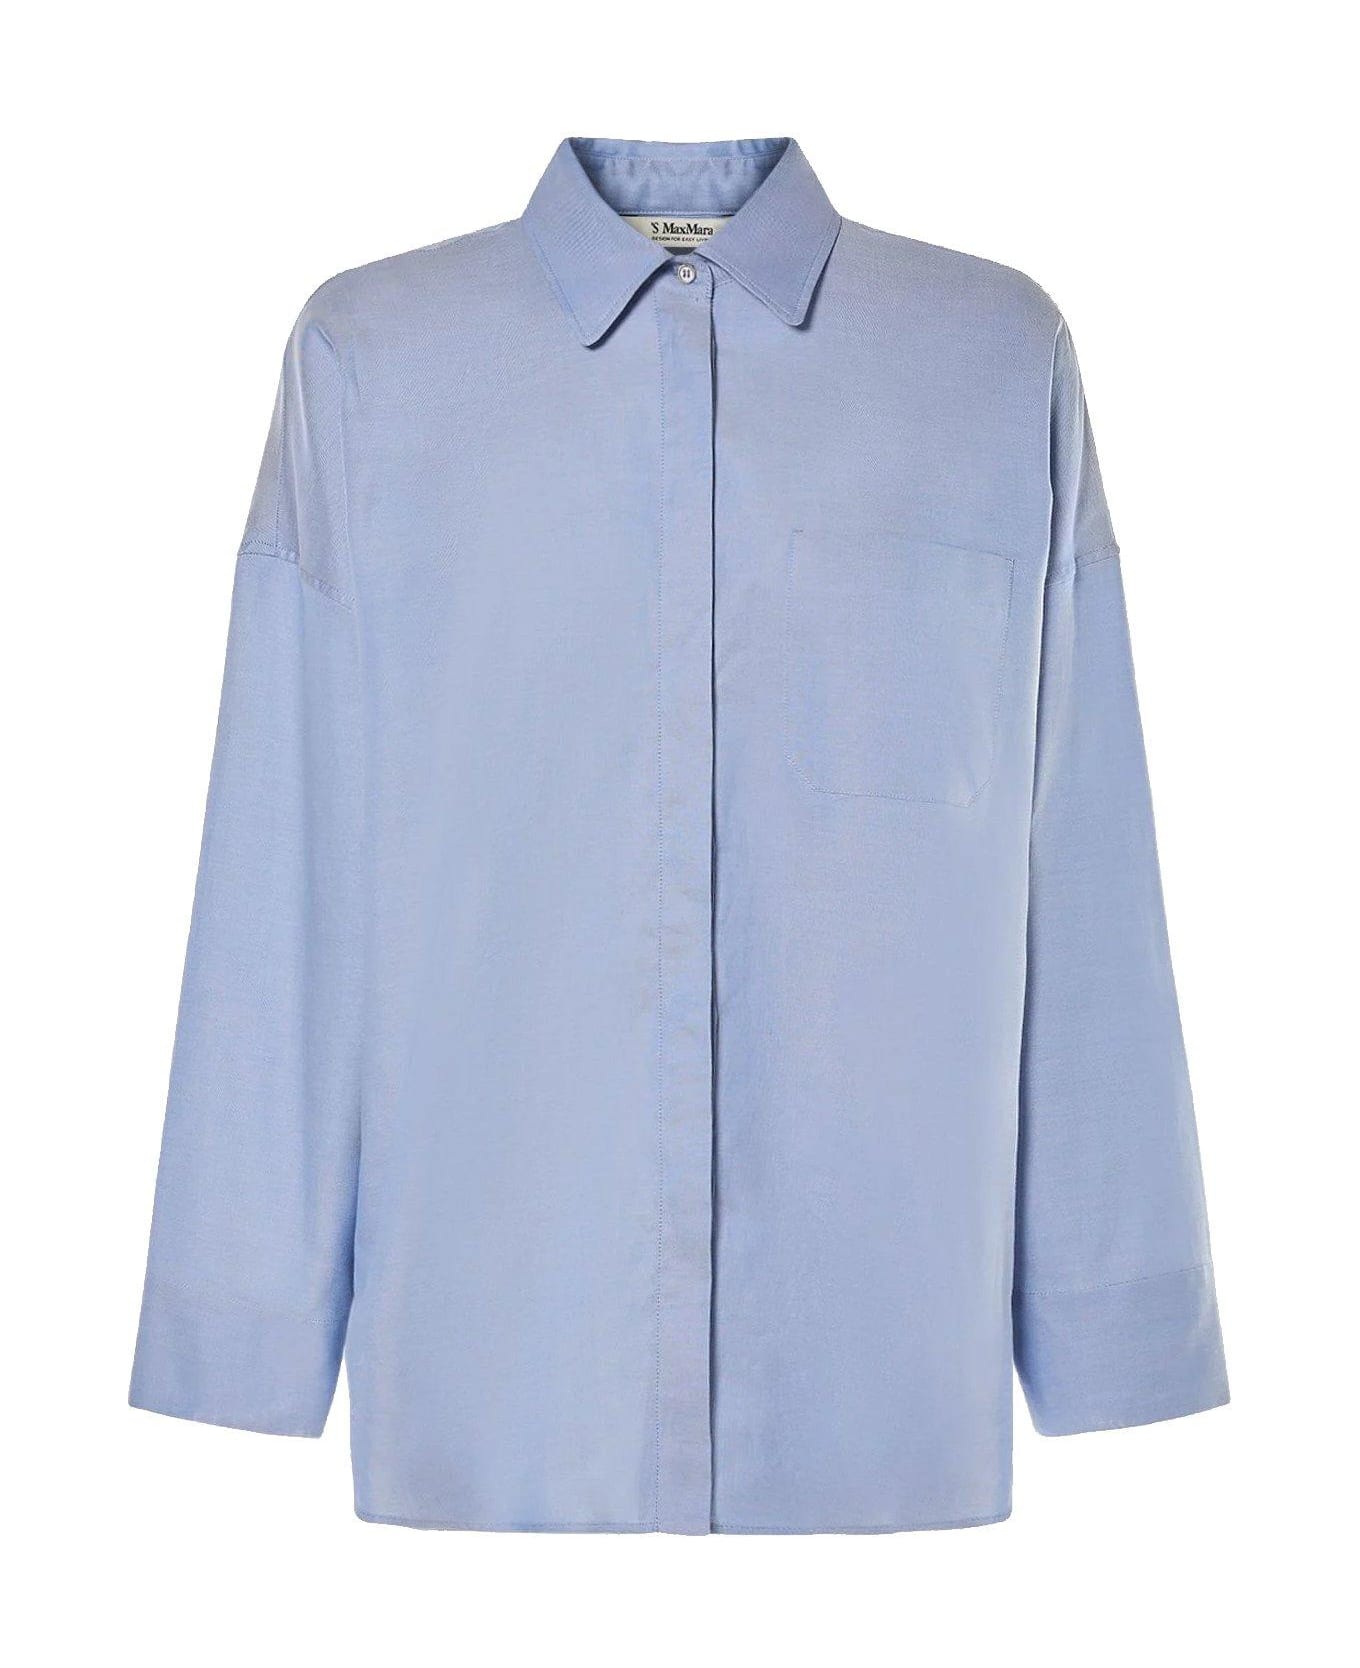 'S Max Mara Buttoned Long-sleeved Shirt - Light blue